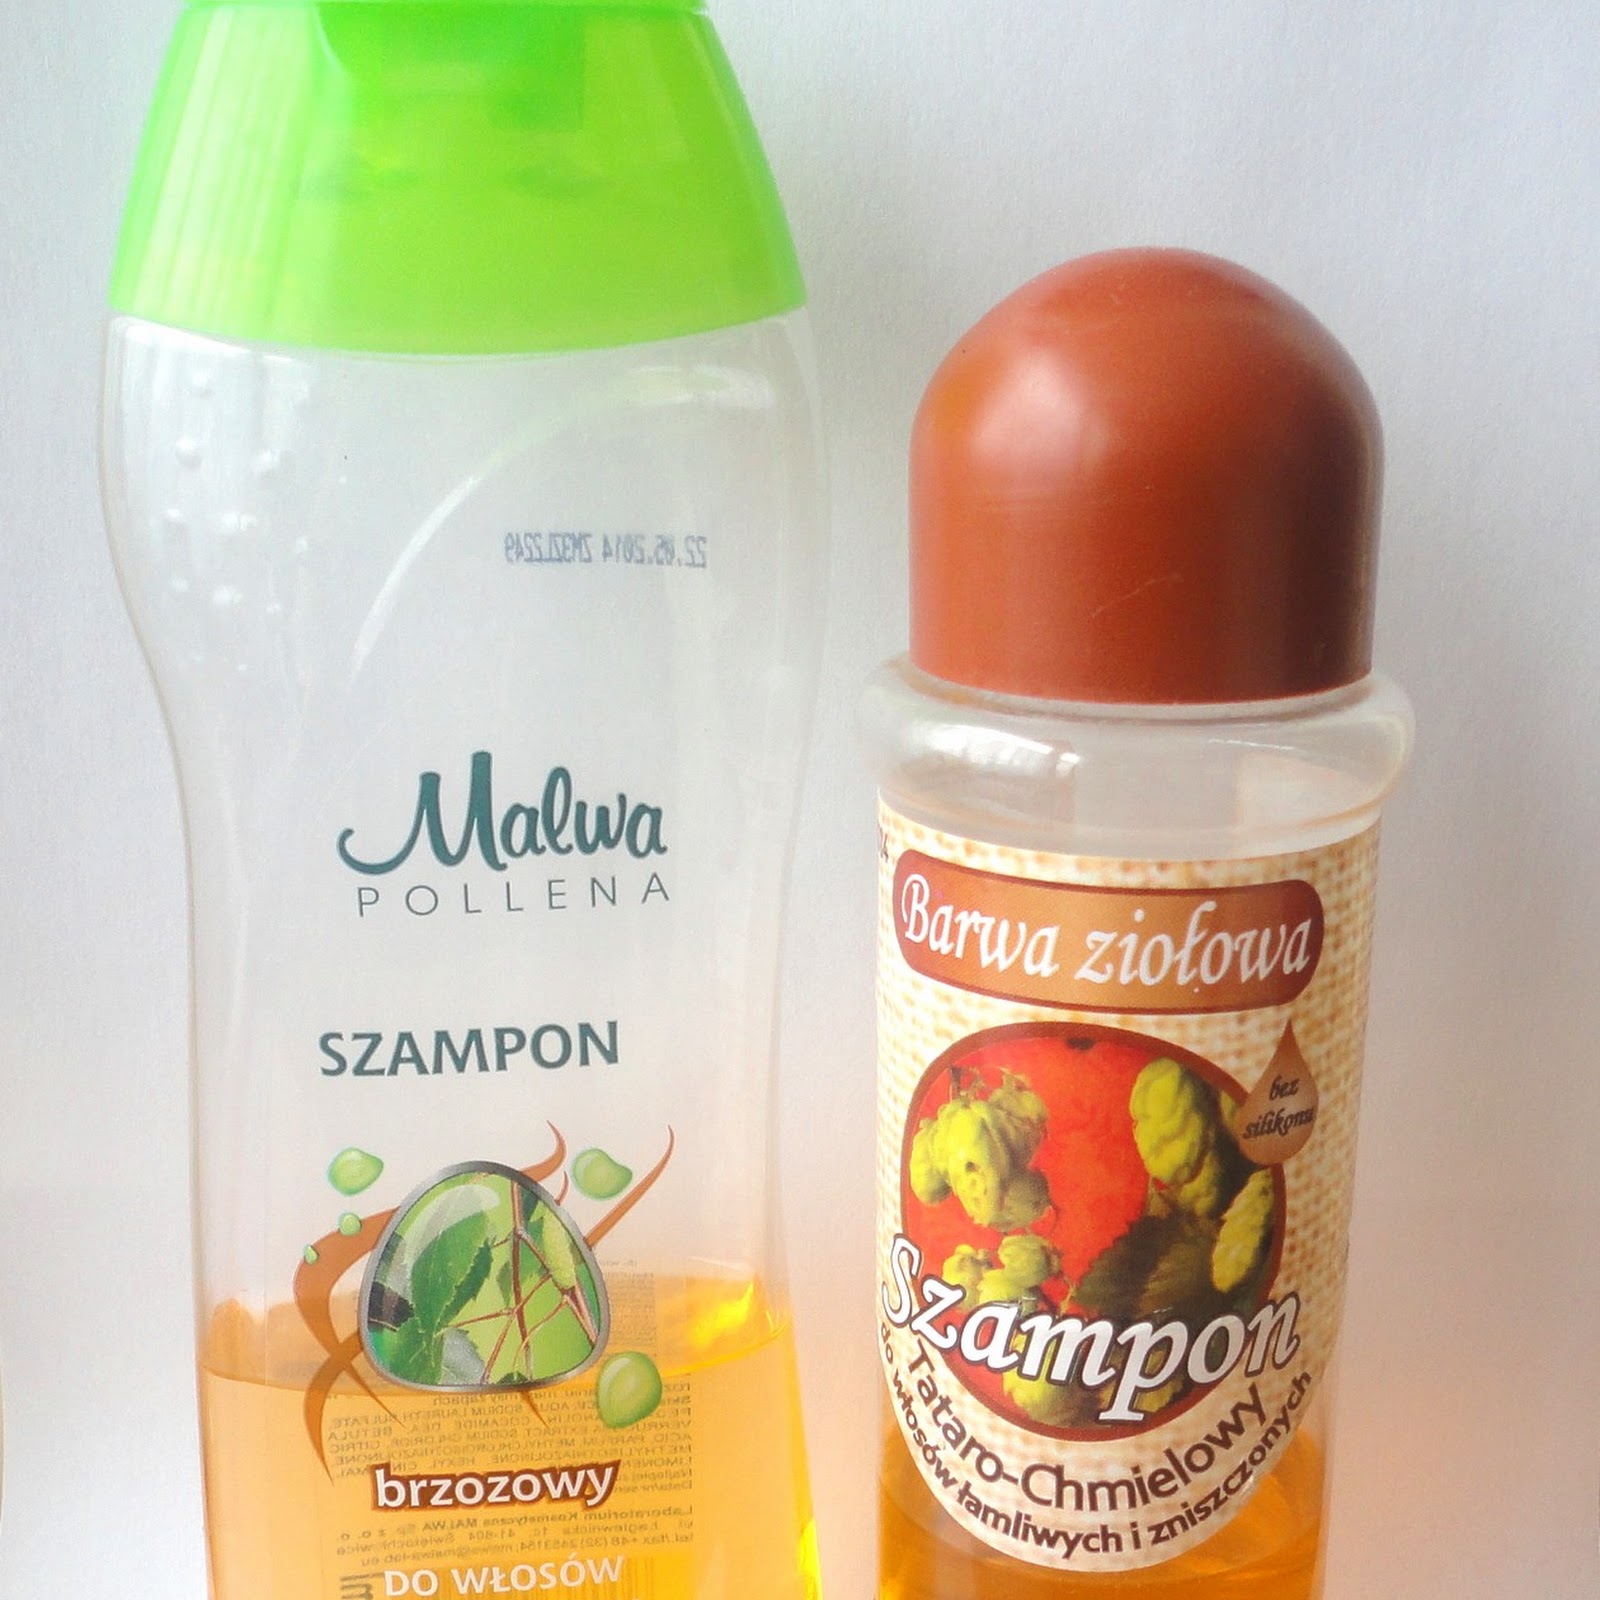 Ziołowe szampony: brzozowy Polleny-Malwy i tataro-chmielowy od Barwy